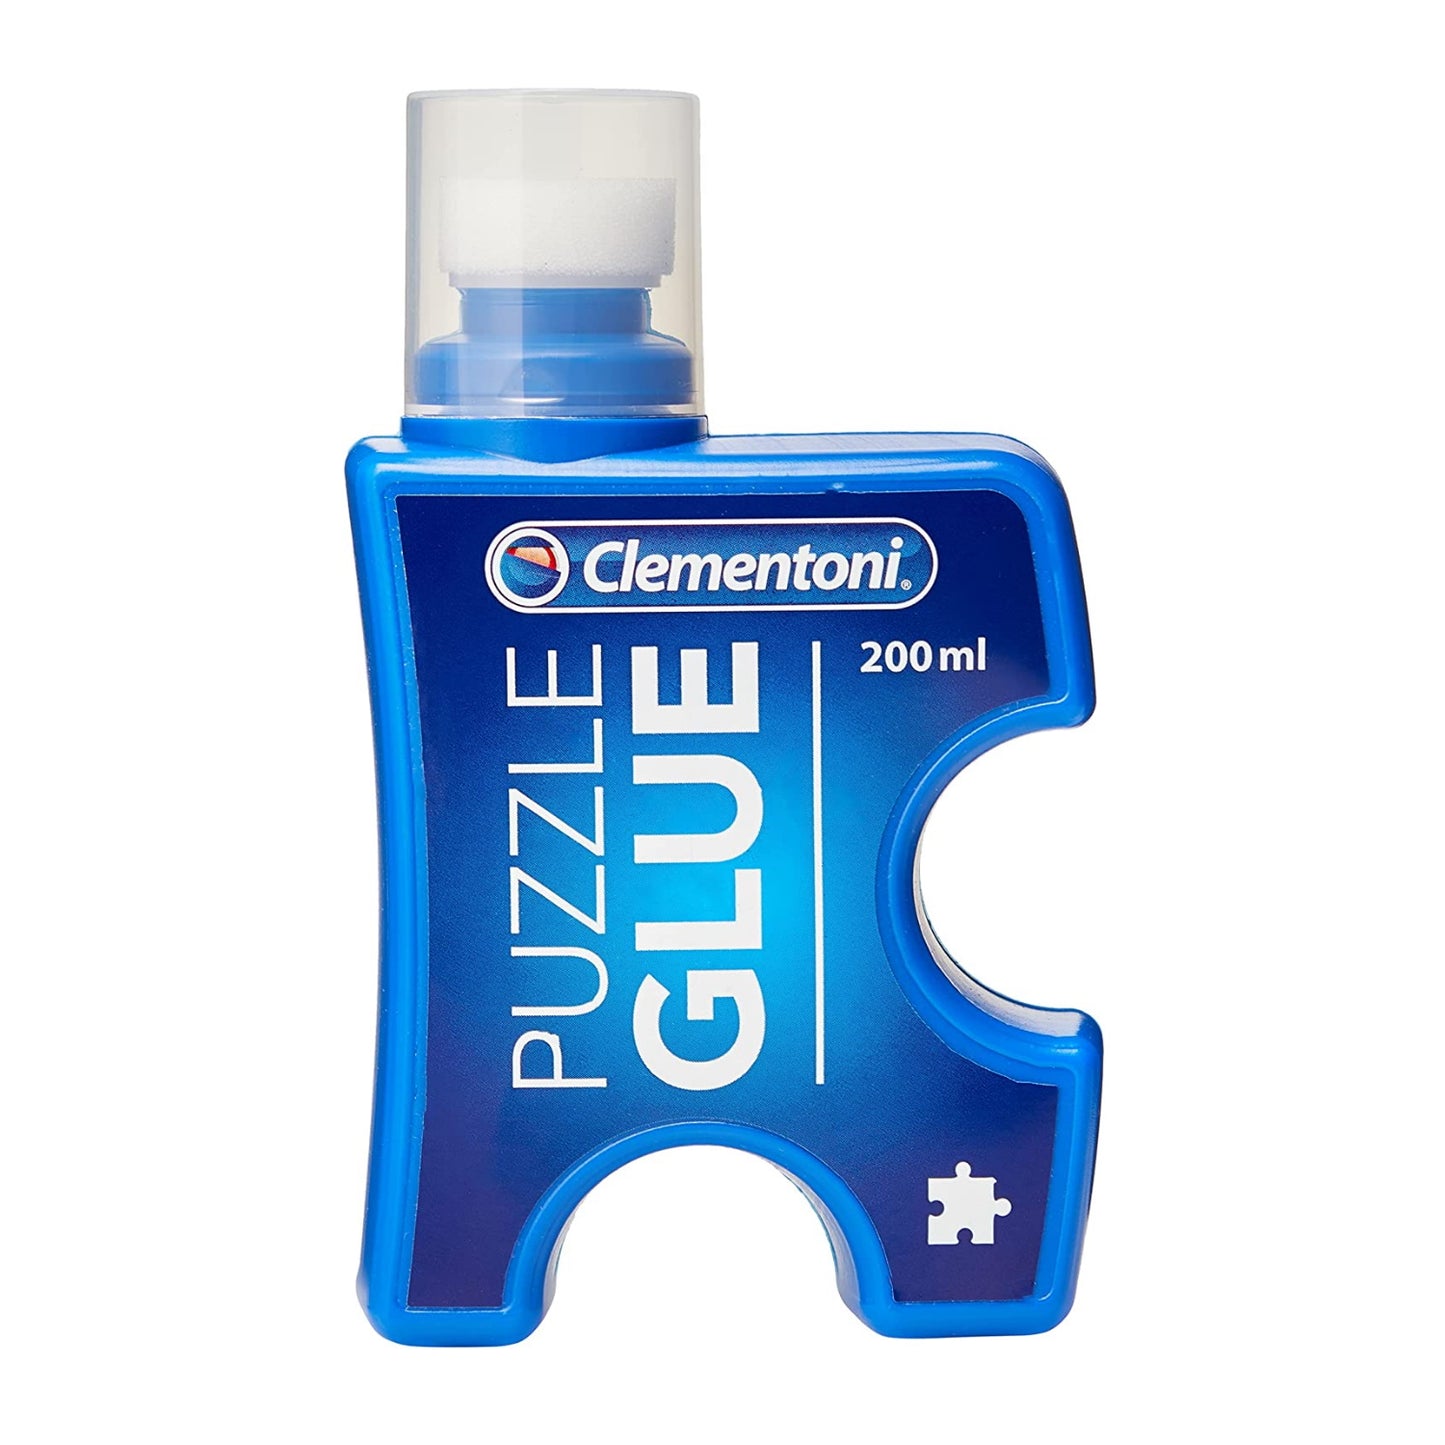 Puzzle Glue Clementoni FR